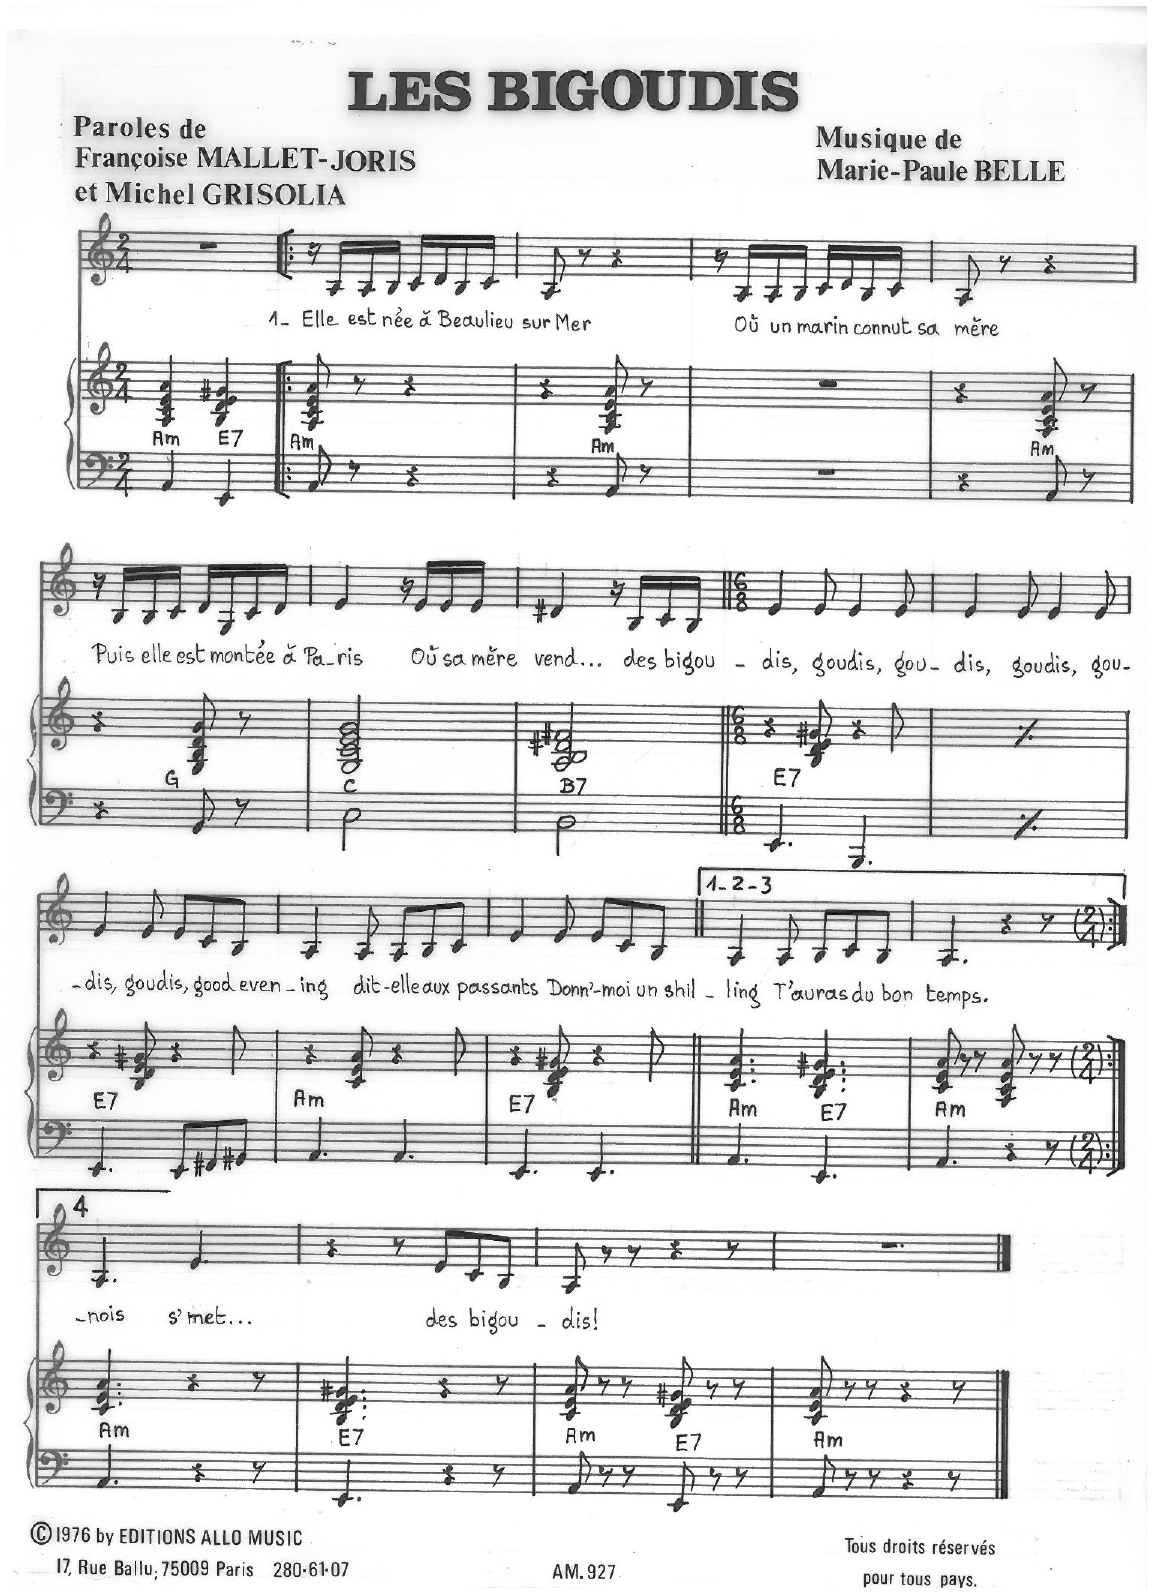 Michel Grisolia, Françoise Mallet-Joris, Marie Paule Belle Les Bigoudis Sheet Music Notes & Chords for Piano & Vocal - Download or Print PDF